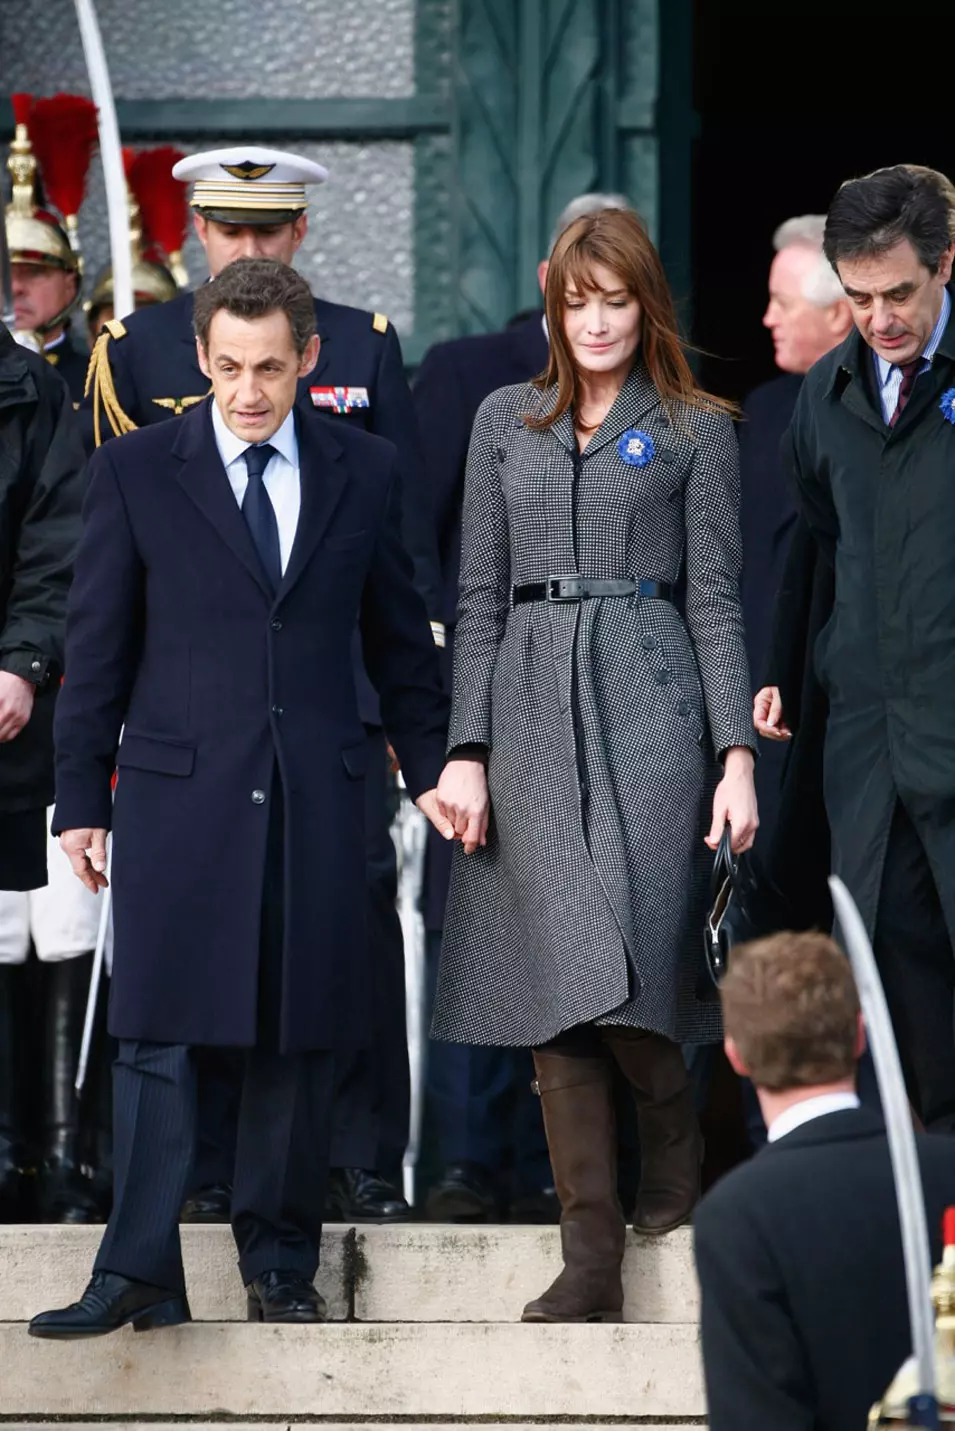 קרלה ברוני סרקוזי והנשיא סרקוזי לאחר טקס זיכרון לחללי מלחמת העולם הראשונה בוורדון, צרפת, 11 נובמבר 2008